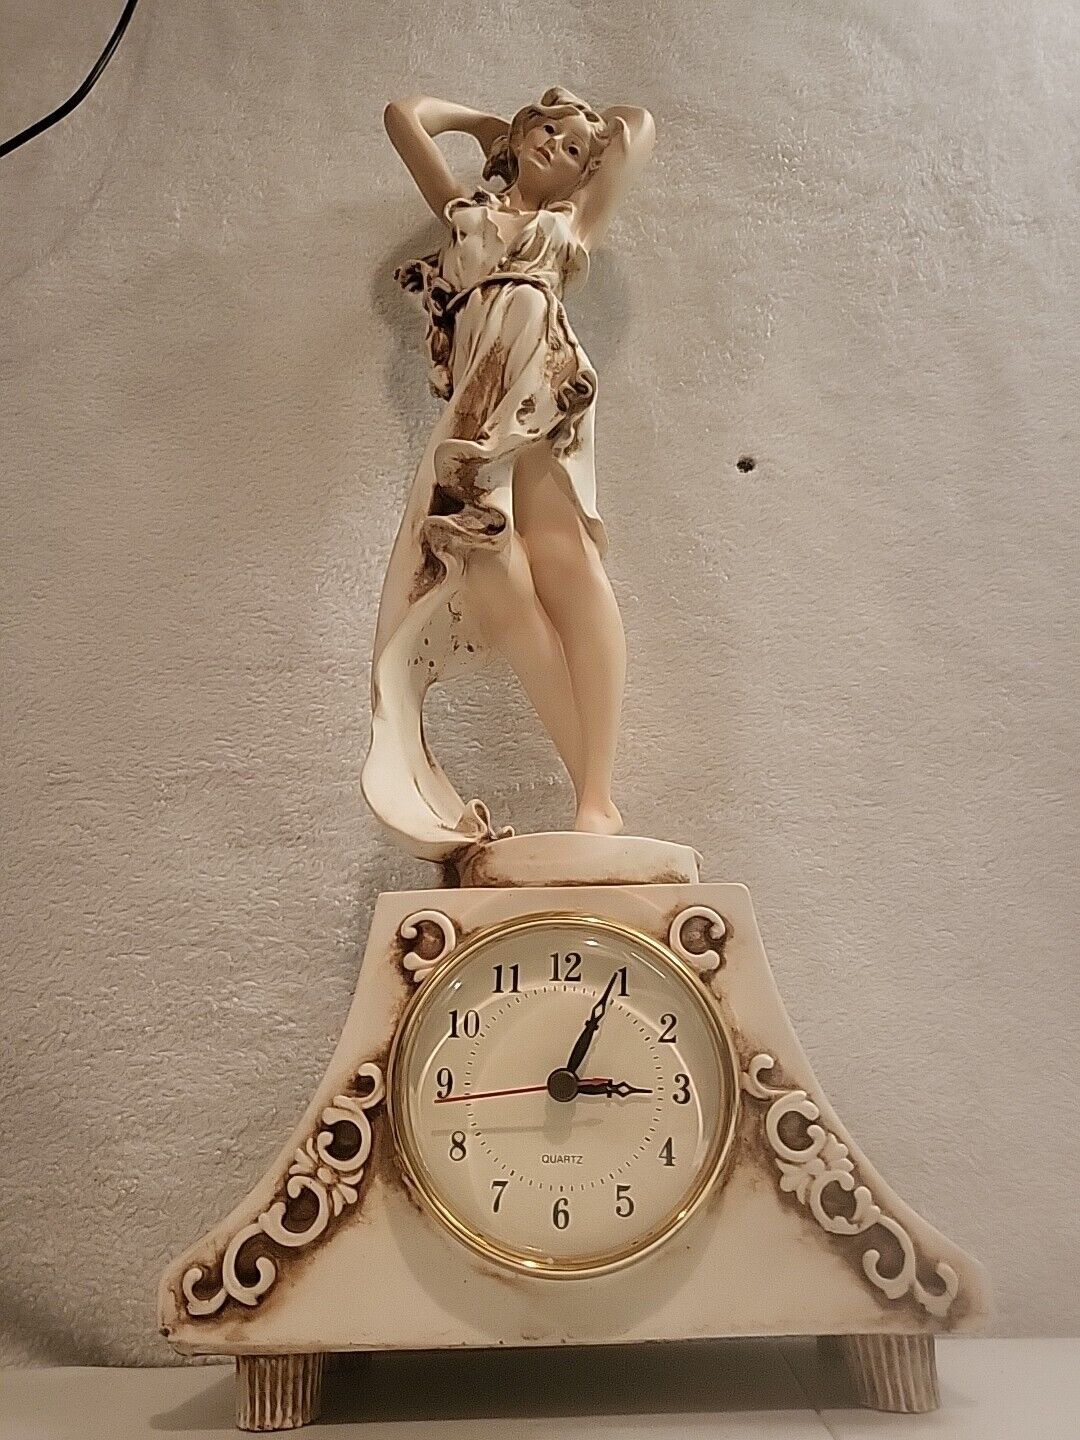 Vintage Big Giuseppe Armani Look Alike Statues Clock 20